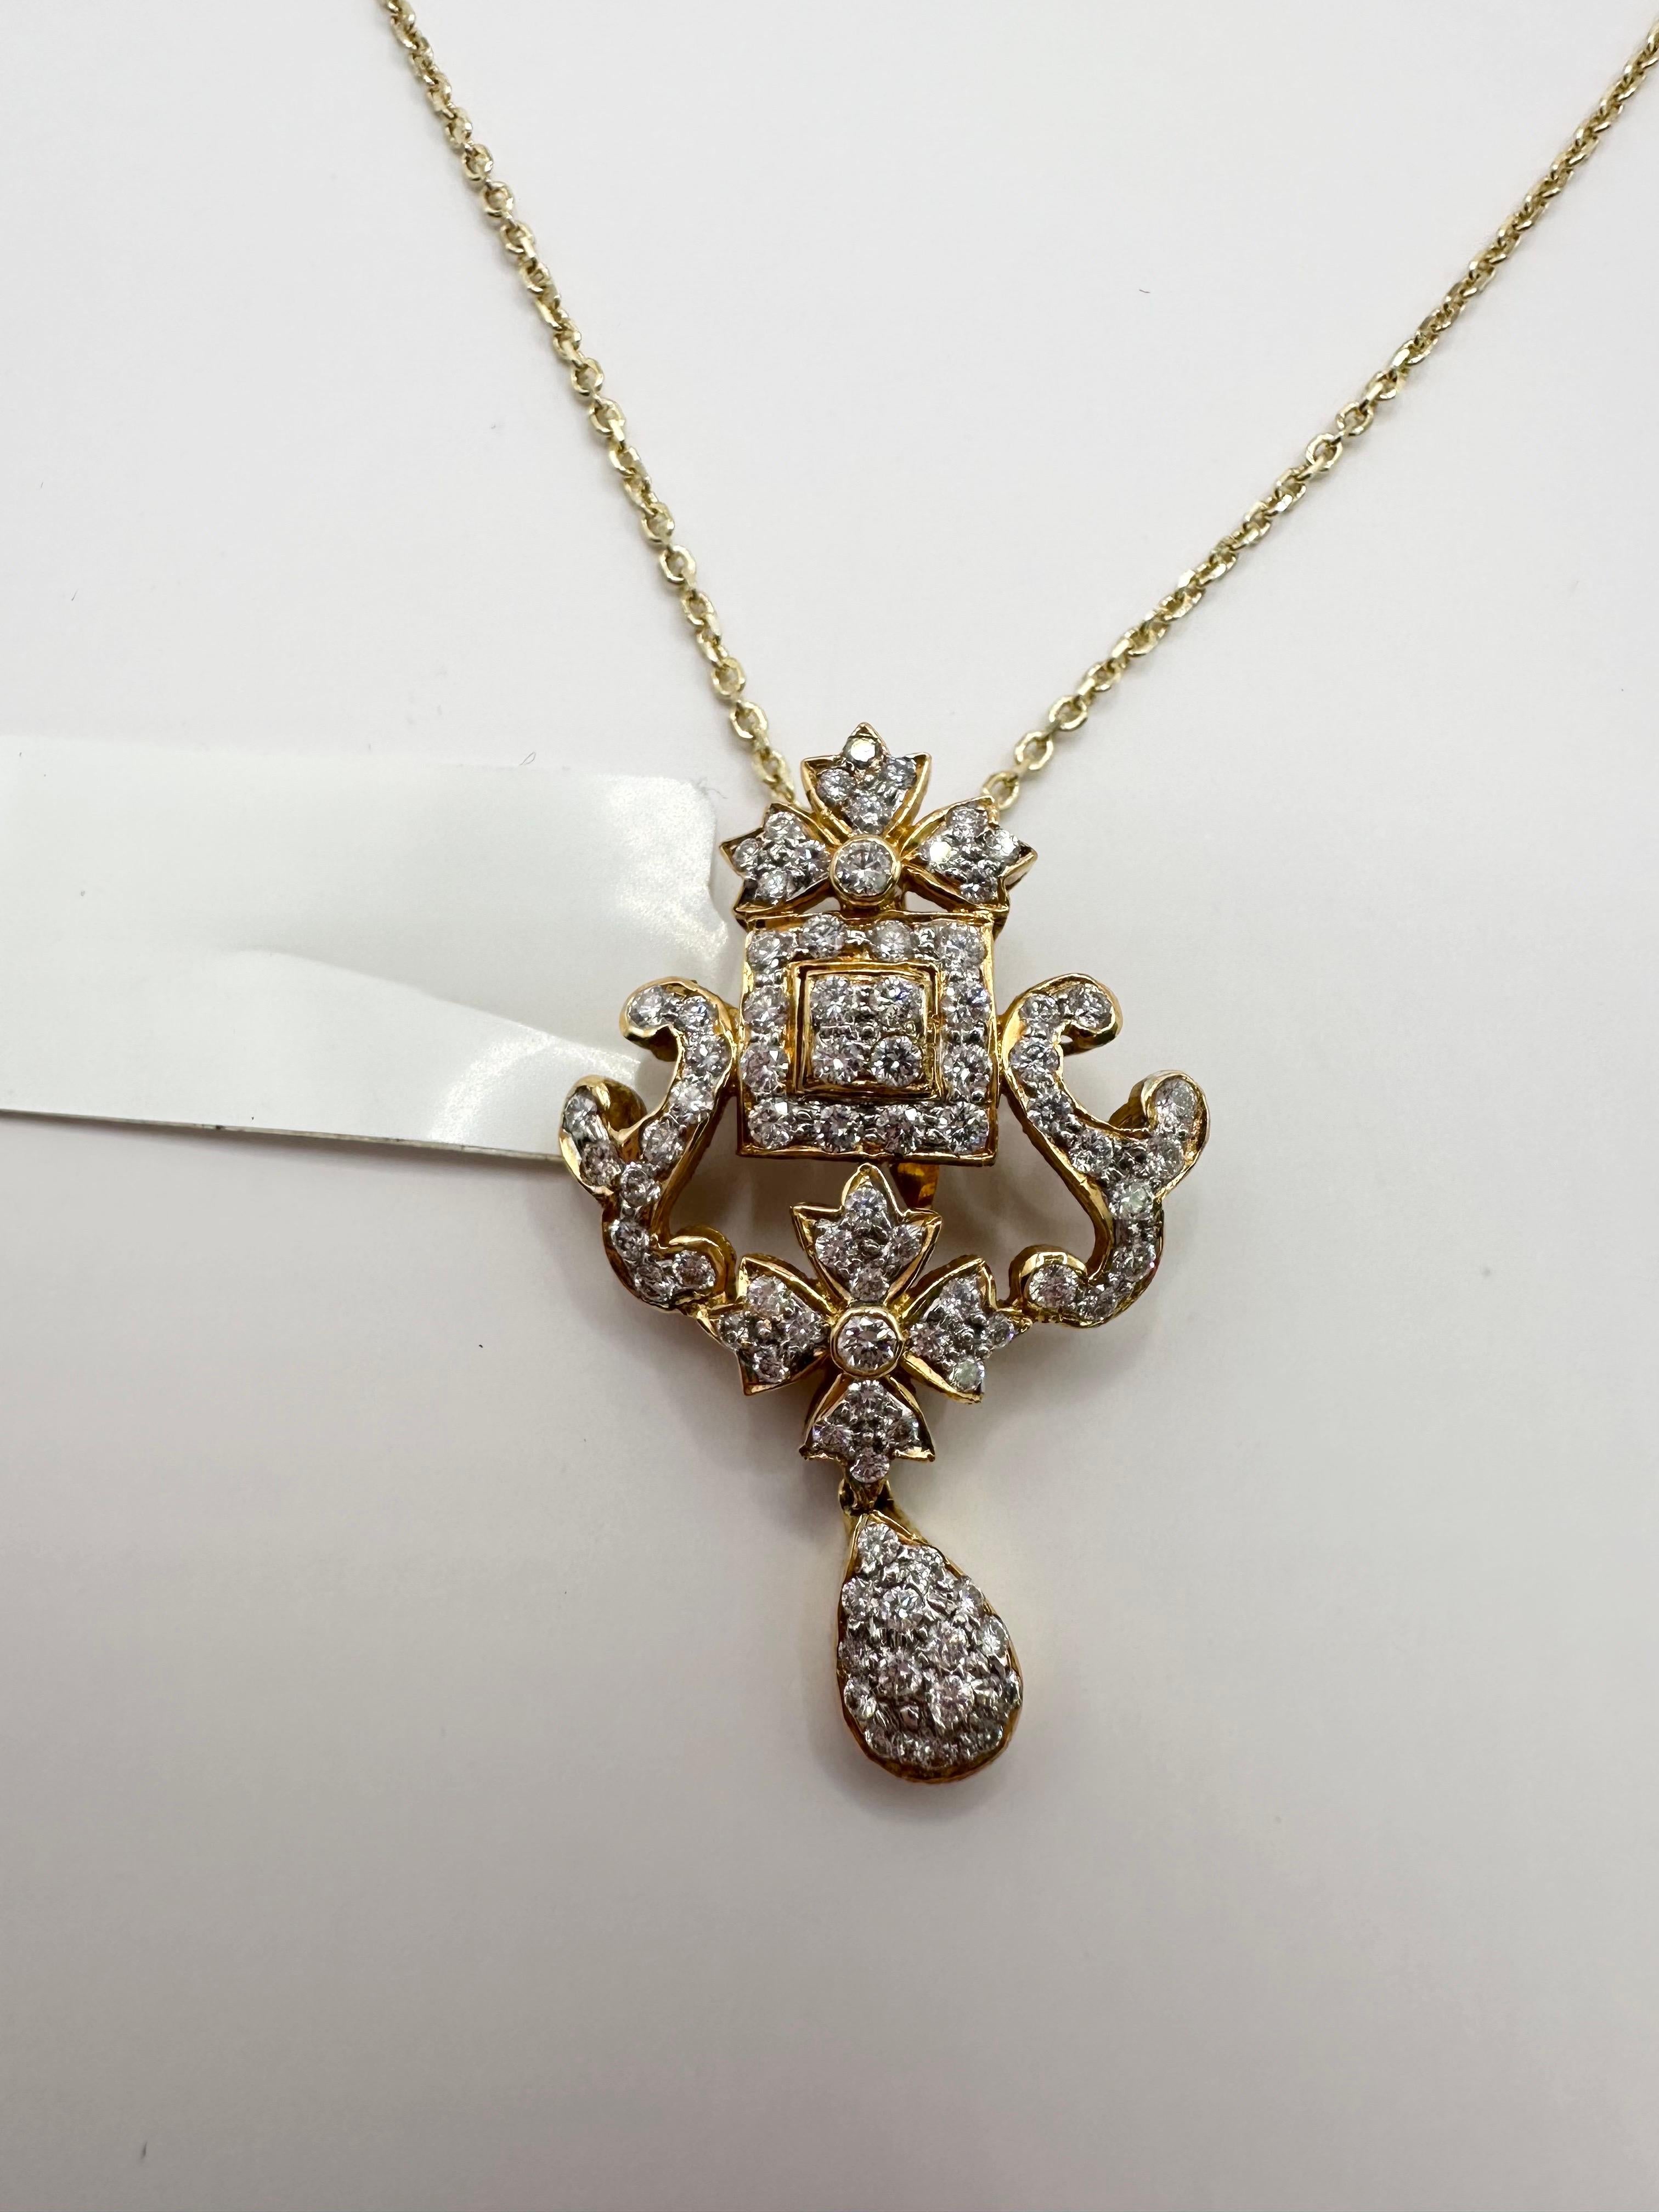 Elegant collier pendentif composé de 1ct de diamants naturels en or jaune 18KT.

Type de métal : 18KT

Naturel Diamant(s) : 
Couleur : F-G
Taille:Brilliante ronde
Carat : 1ct
Clarté : VS-SI 

Le certificat d'authenticité est fourni avec l'achat !

À